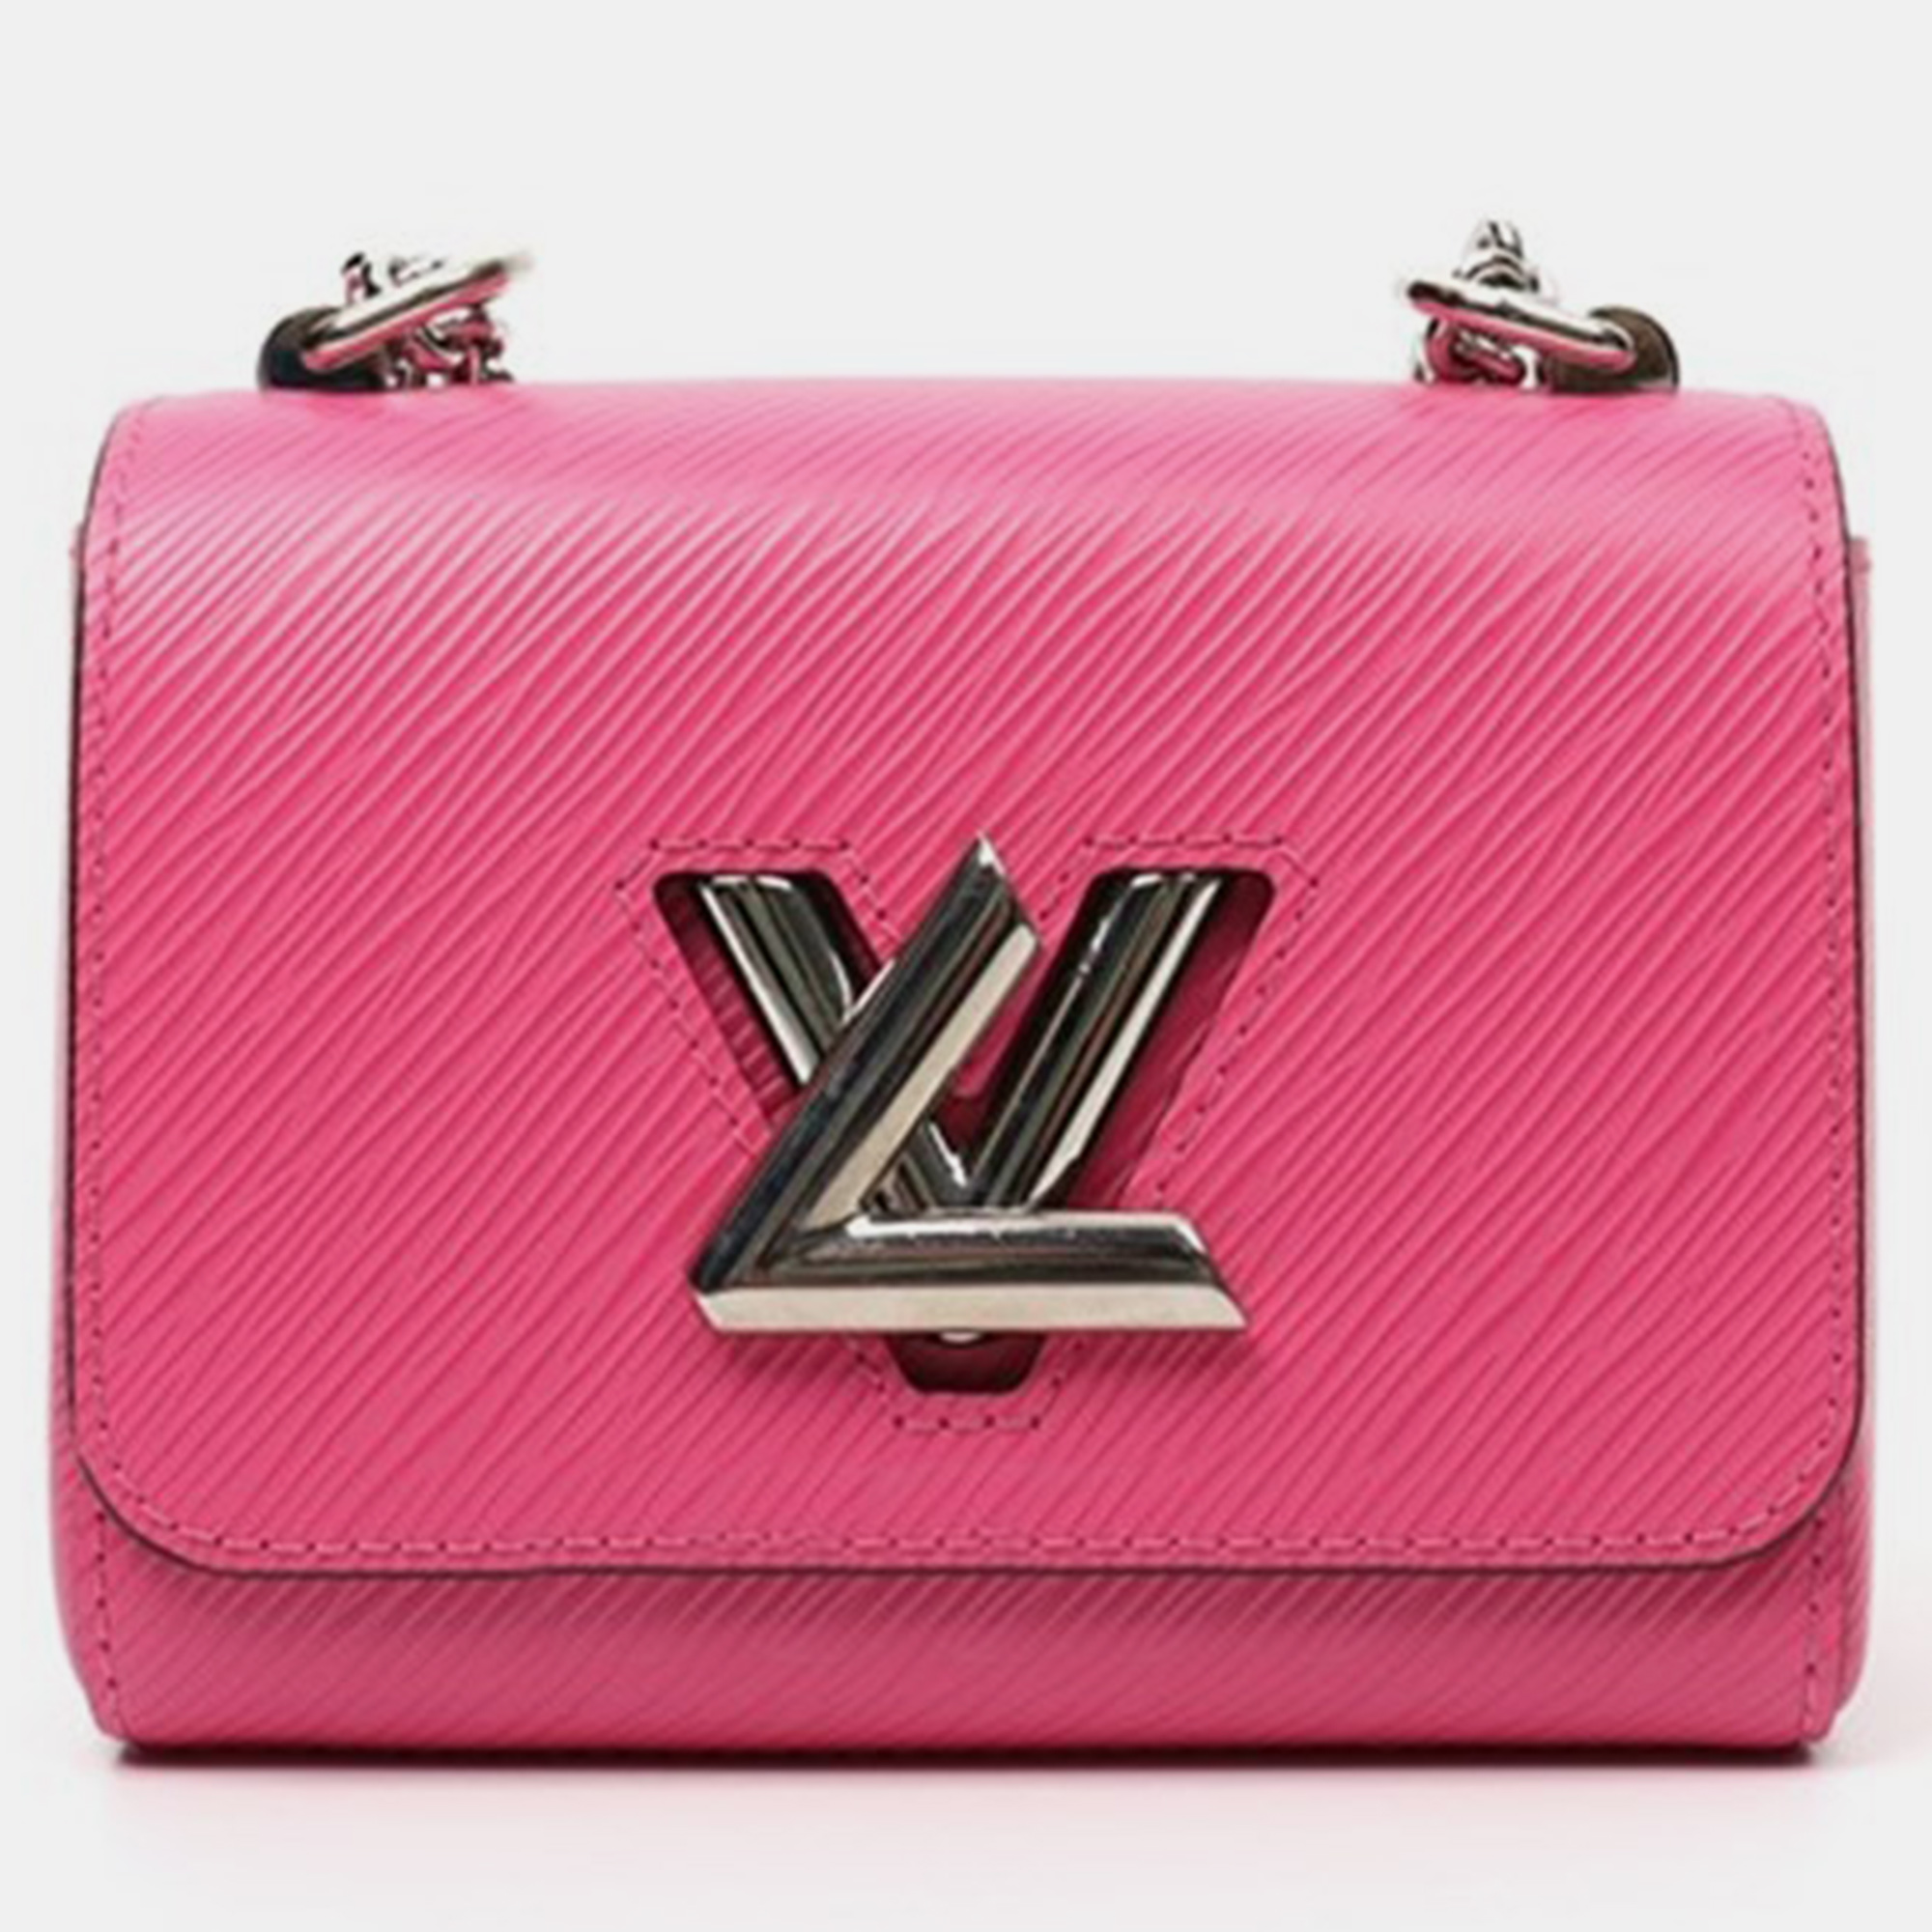 Louis vuitton pink epi leather twist mini shoulder bag